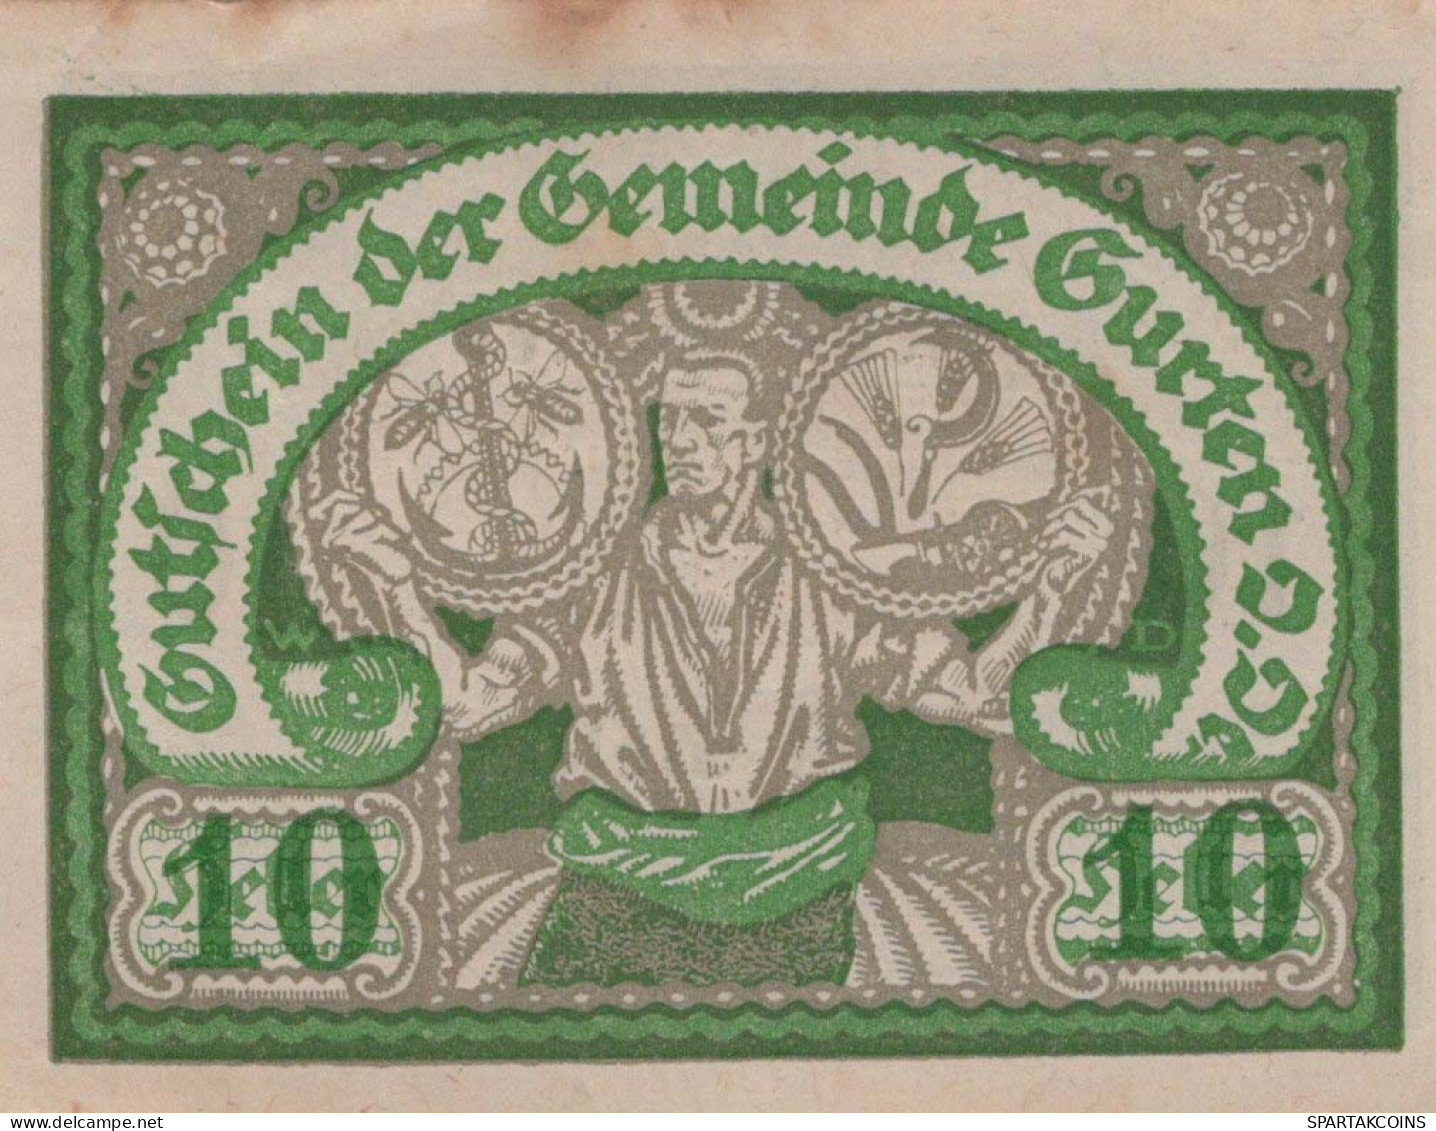 10 HELLER 1920 Stadt GURTEN Oberösterreich Österreich Notgeld Banknote #PI333 - [11] Emissions Locales